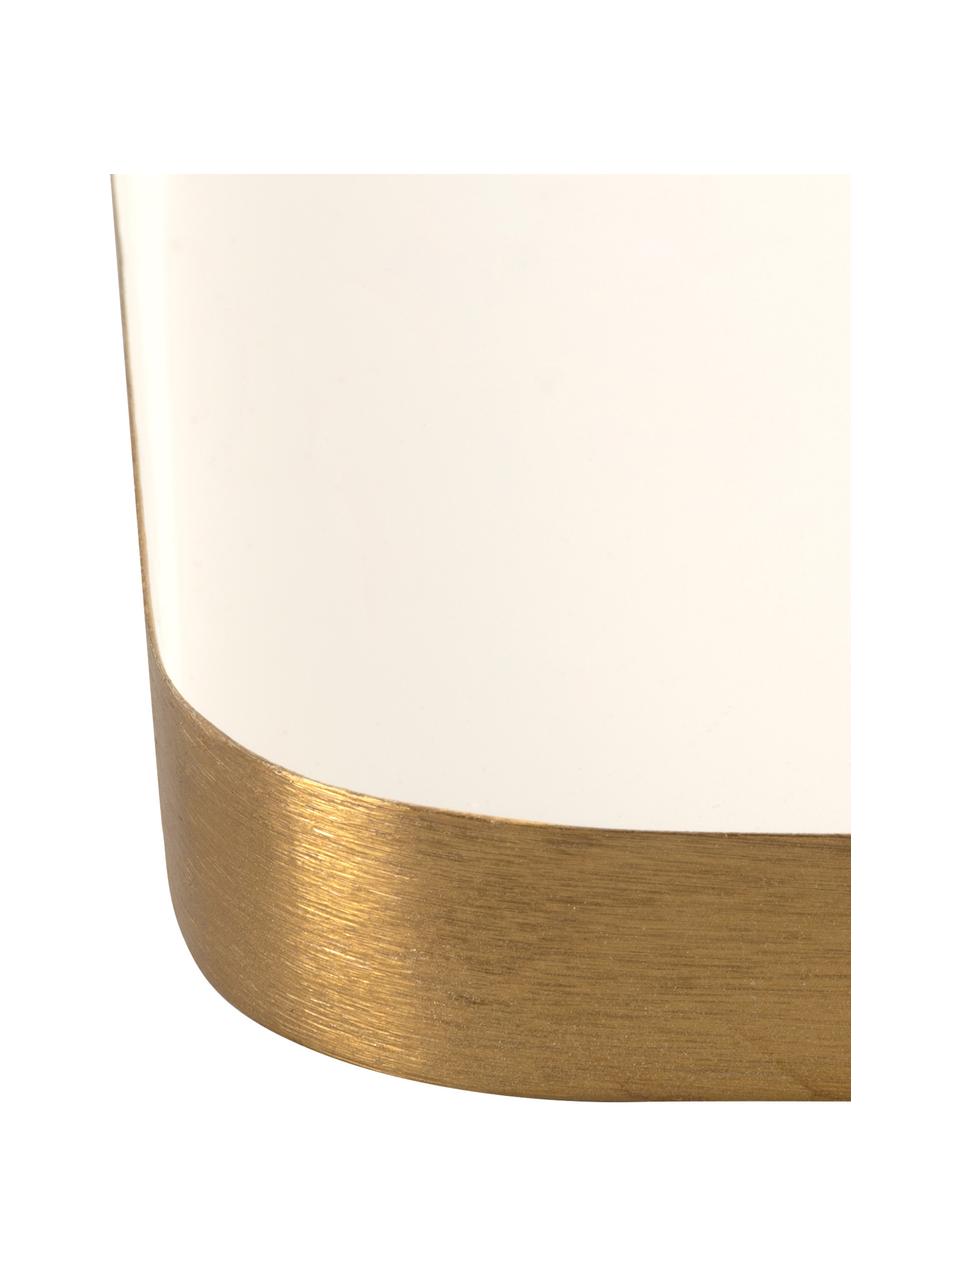 Vassoio decorativo con finitura lucida Festive, Metallo rivestito, Bianco, dorato, Lung. 25 x Larg. 13 cm